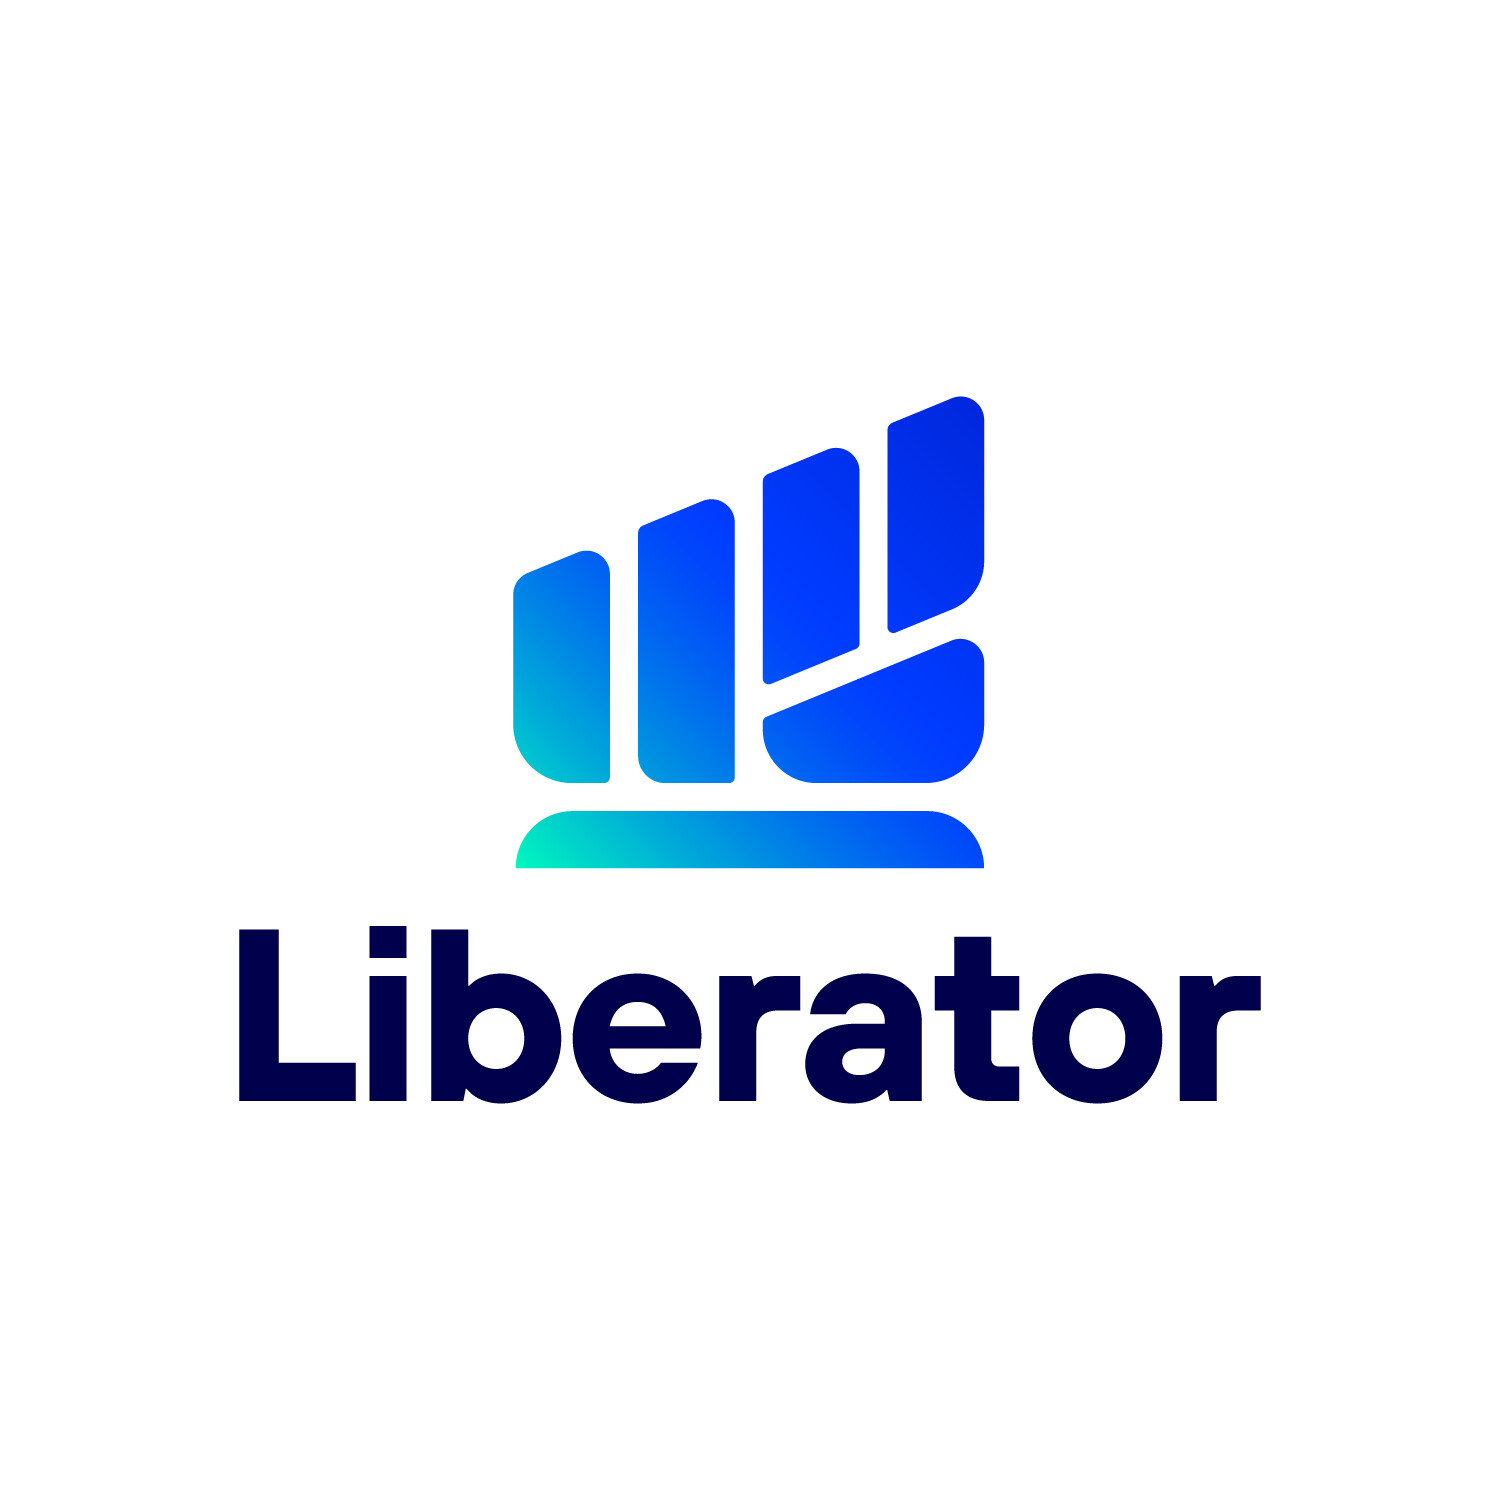 นักลงทุนเฮ…"Liberator" เปิดบริการเทรด TFEX ฟรีไม่มีค่าคอม 17 เม.ย. นี้!! เดินหน้าปล่อยผลิตภัณฑ์การลงทุนต่อเนื่อง เตรียมพบเทรดต่างประเทศไม่มีค่าคอมในไตรมาส 3 ปีนี้